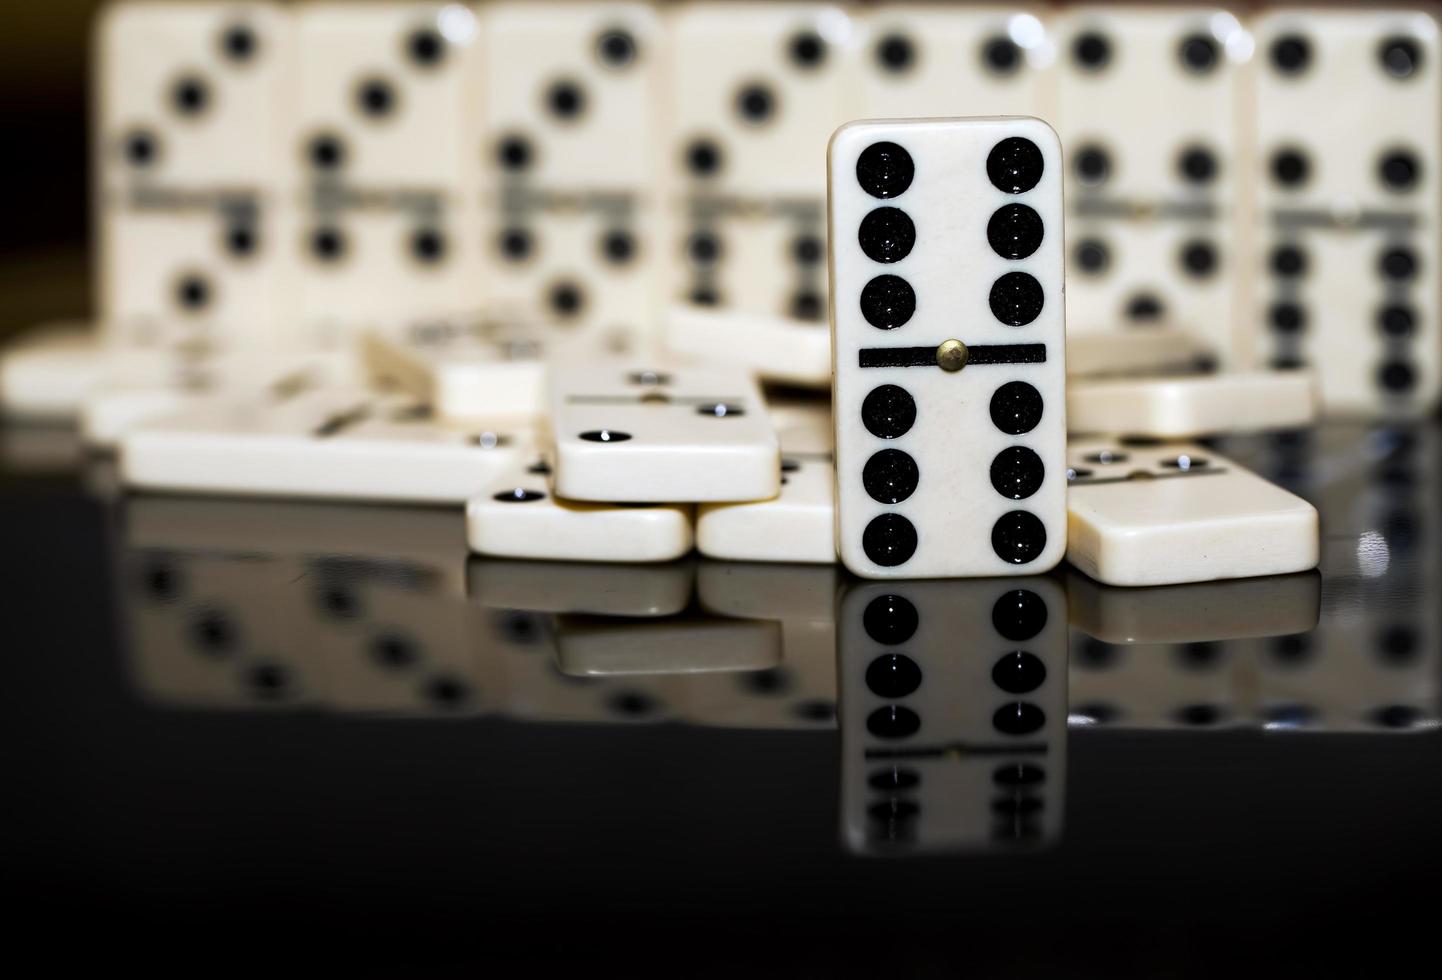 Steine für das Domino-Strategiespiel foto